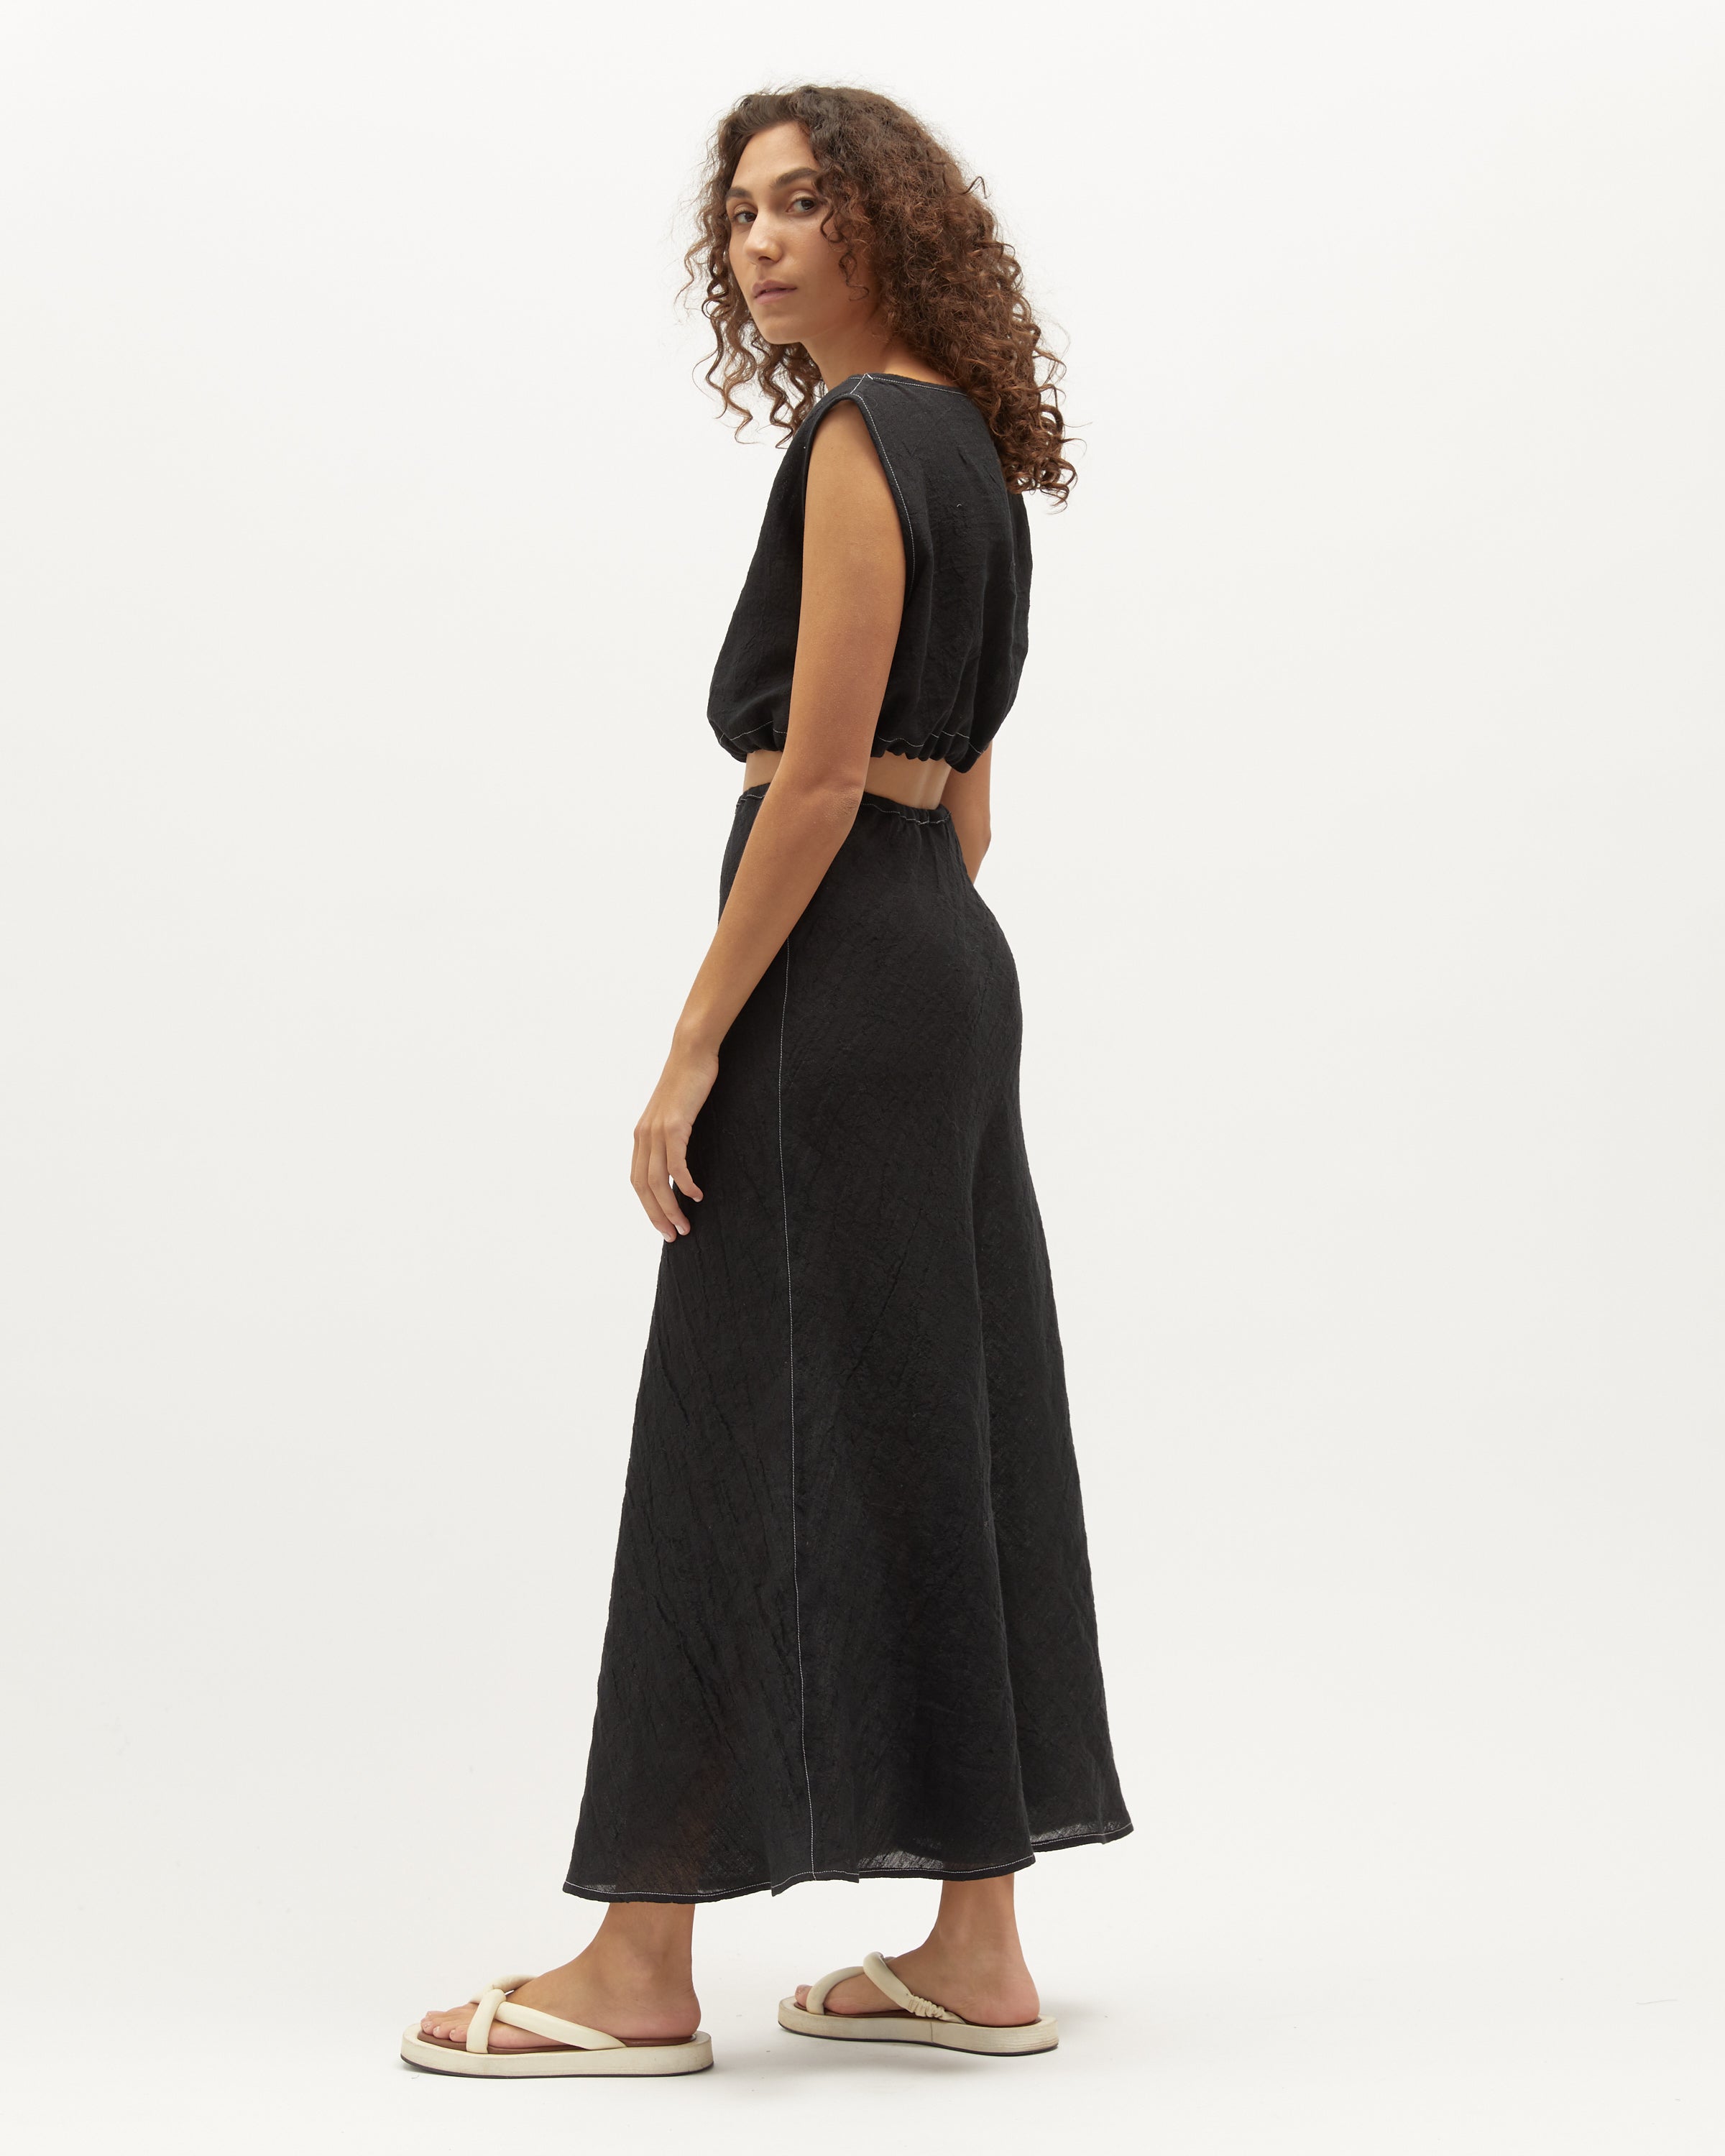 Wray Skirt | Black Contrast Stitch $260